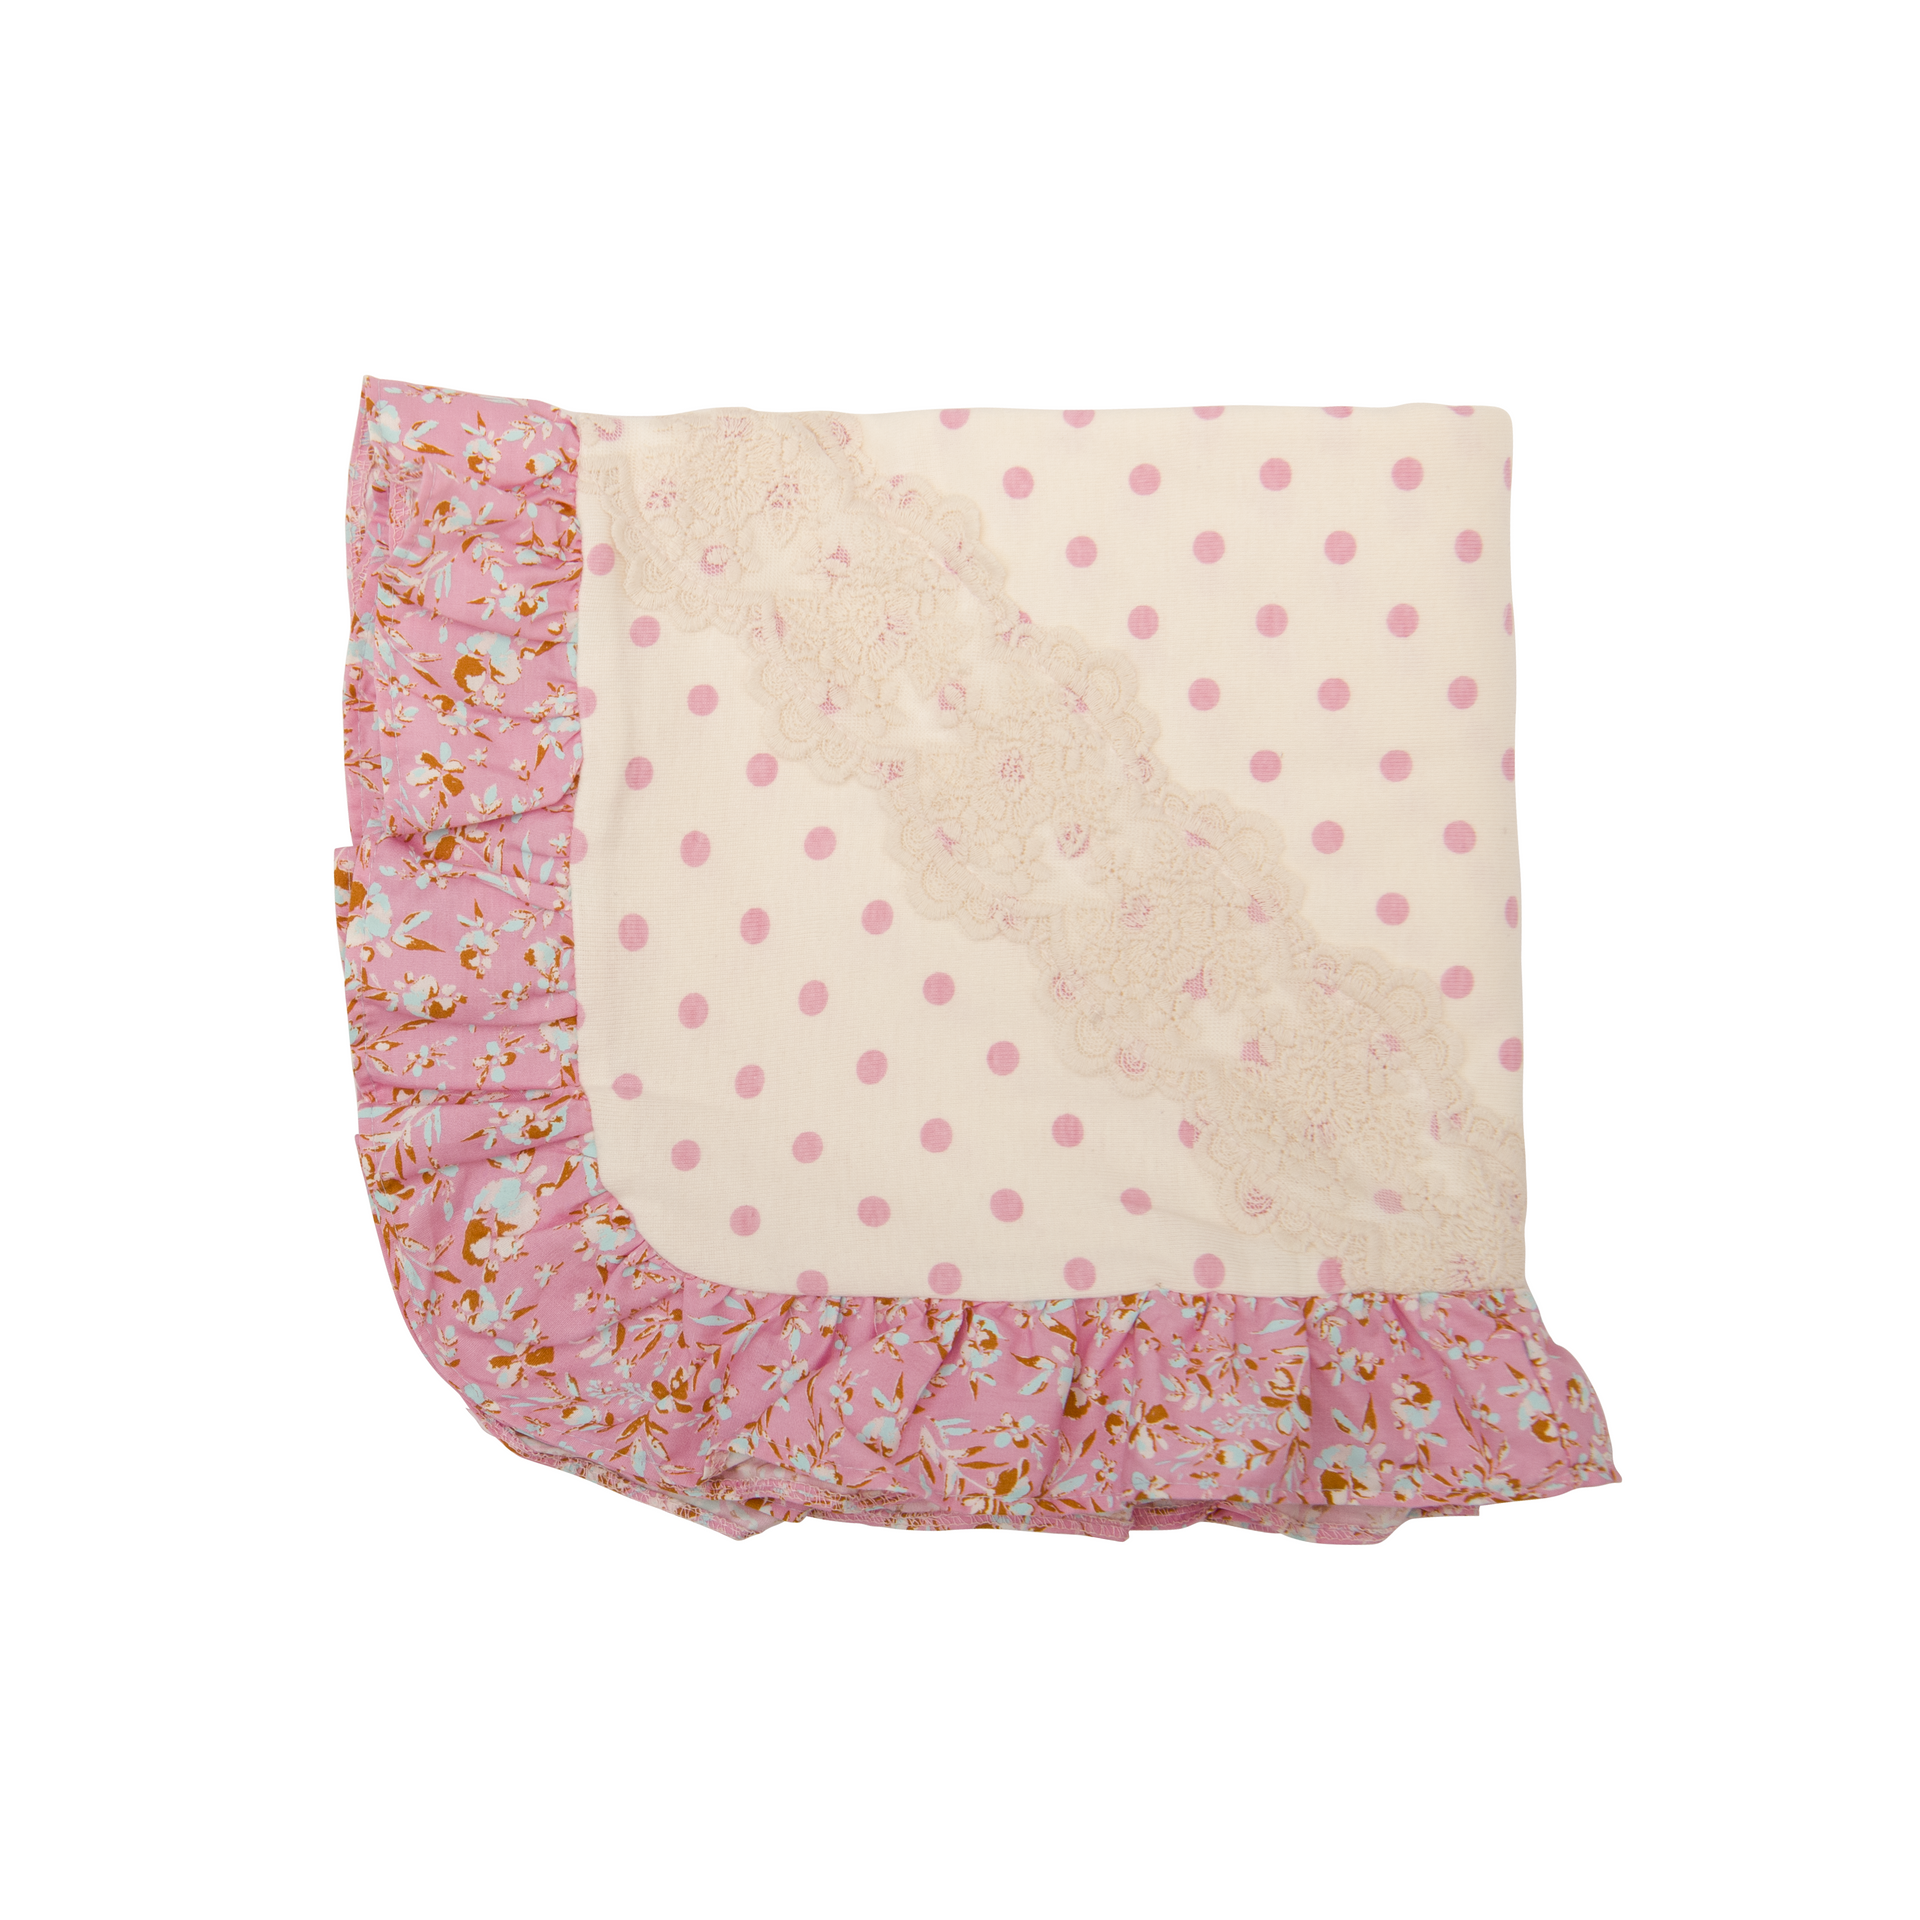 Daisy Bloom Blanket Gift Set